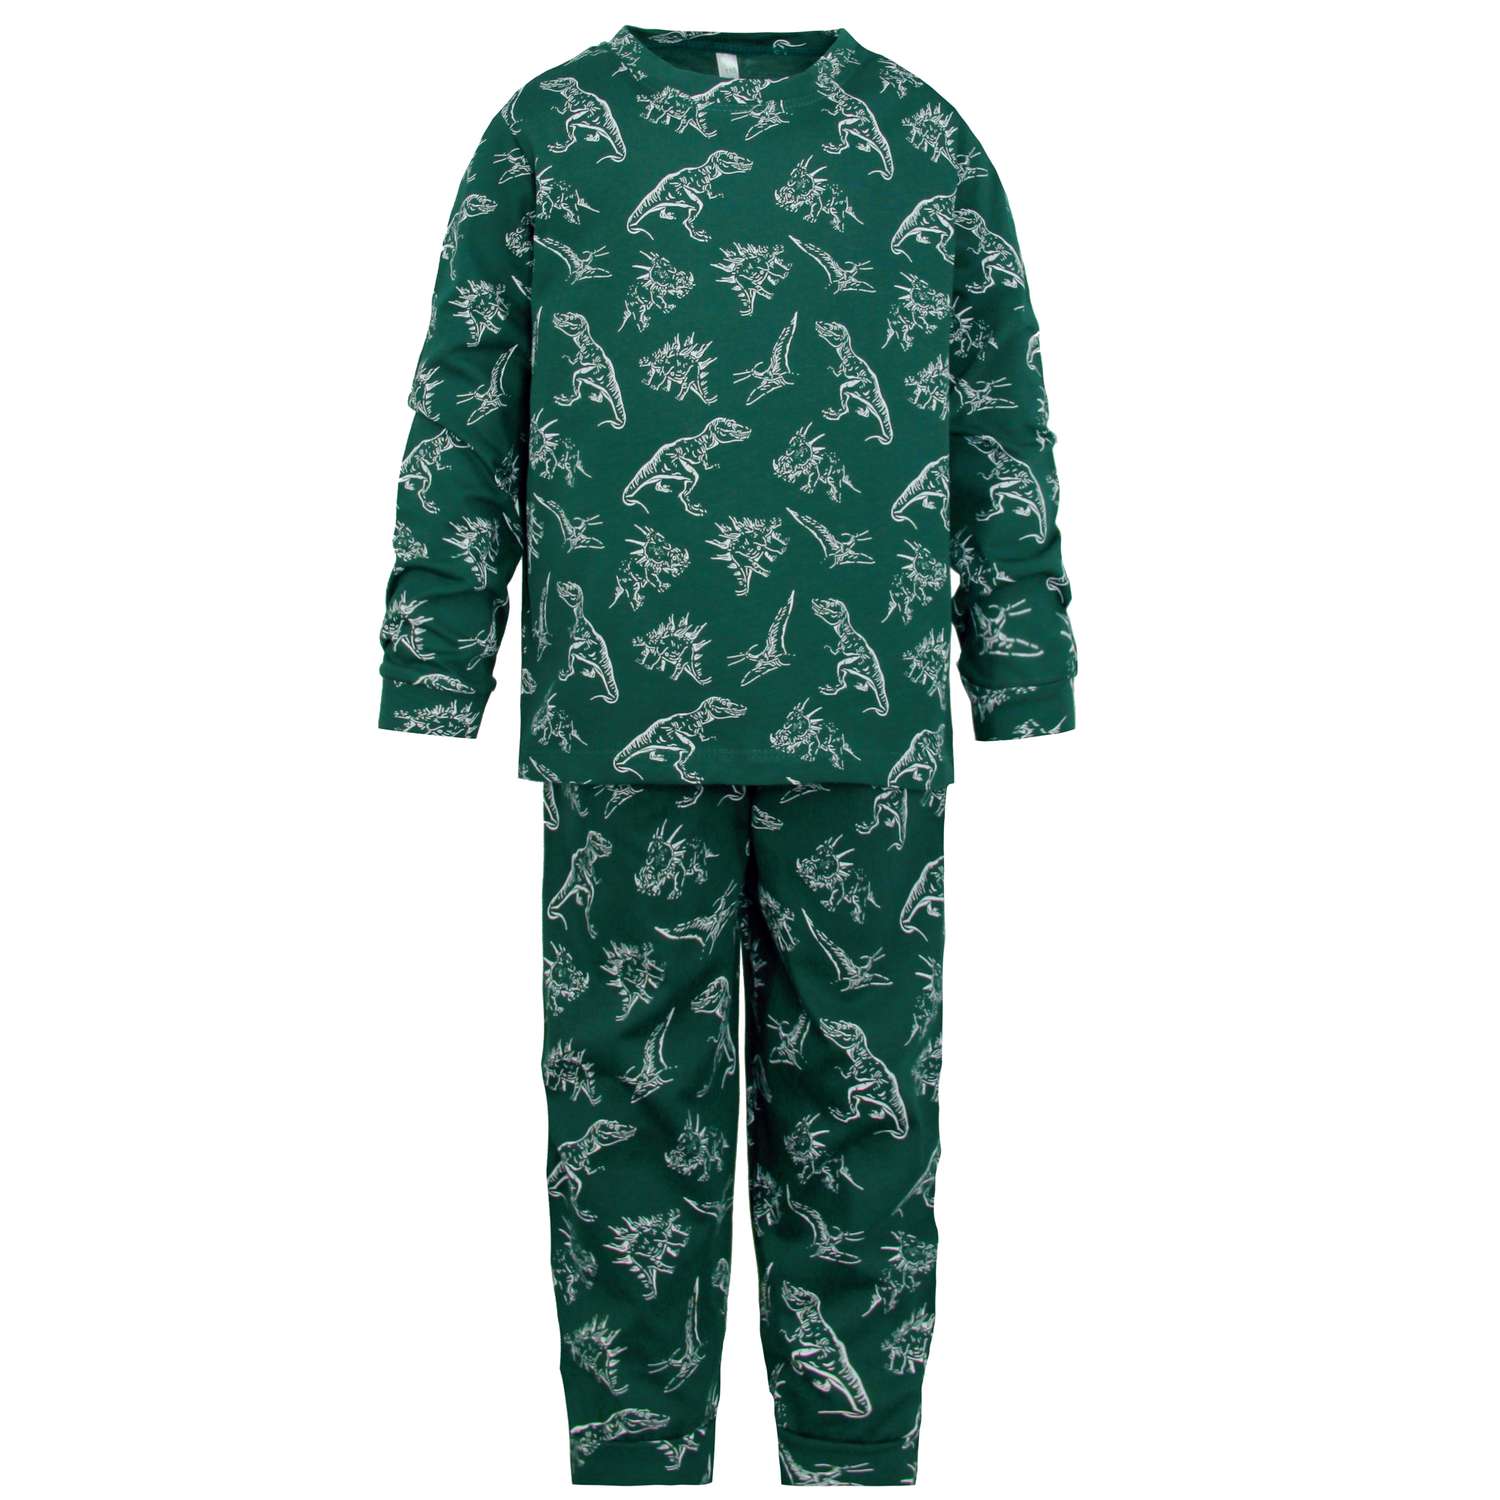 Пижама ИНОВО GS1174/темно-зеленый-динозавр - фото 1